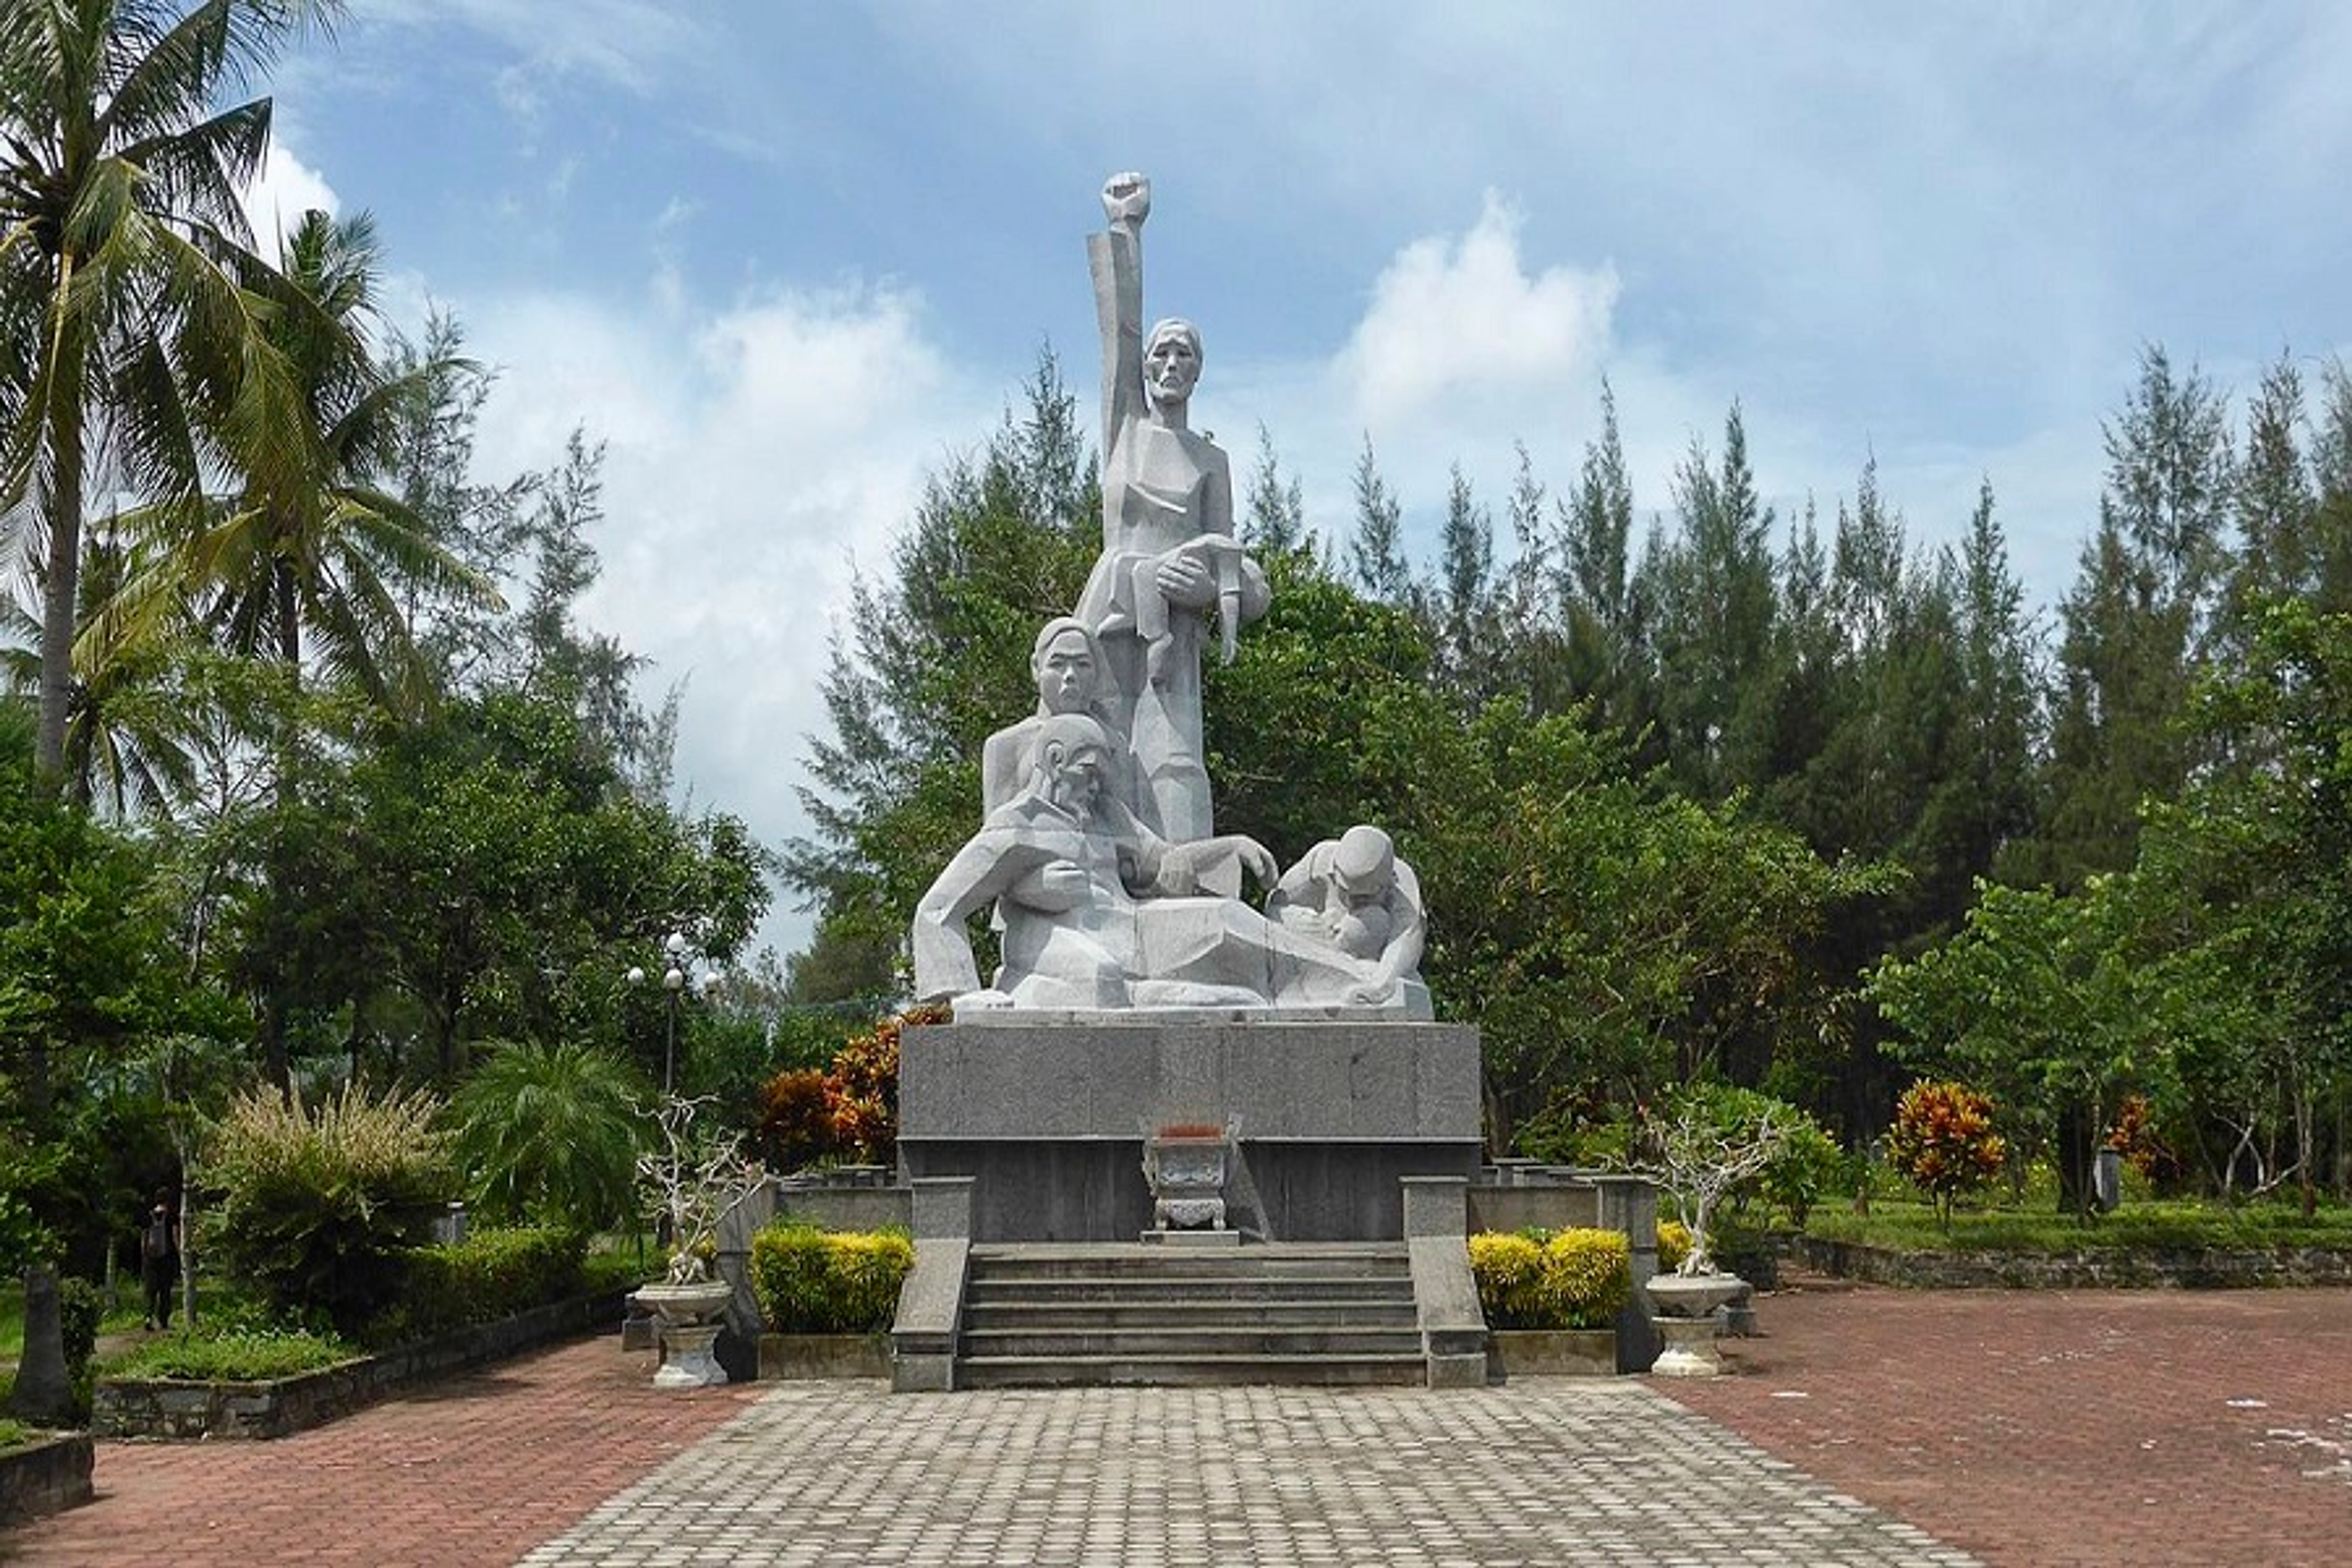 My Lai Massacre village - 50 years and Seeking the forgiveness